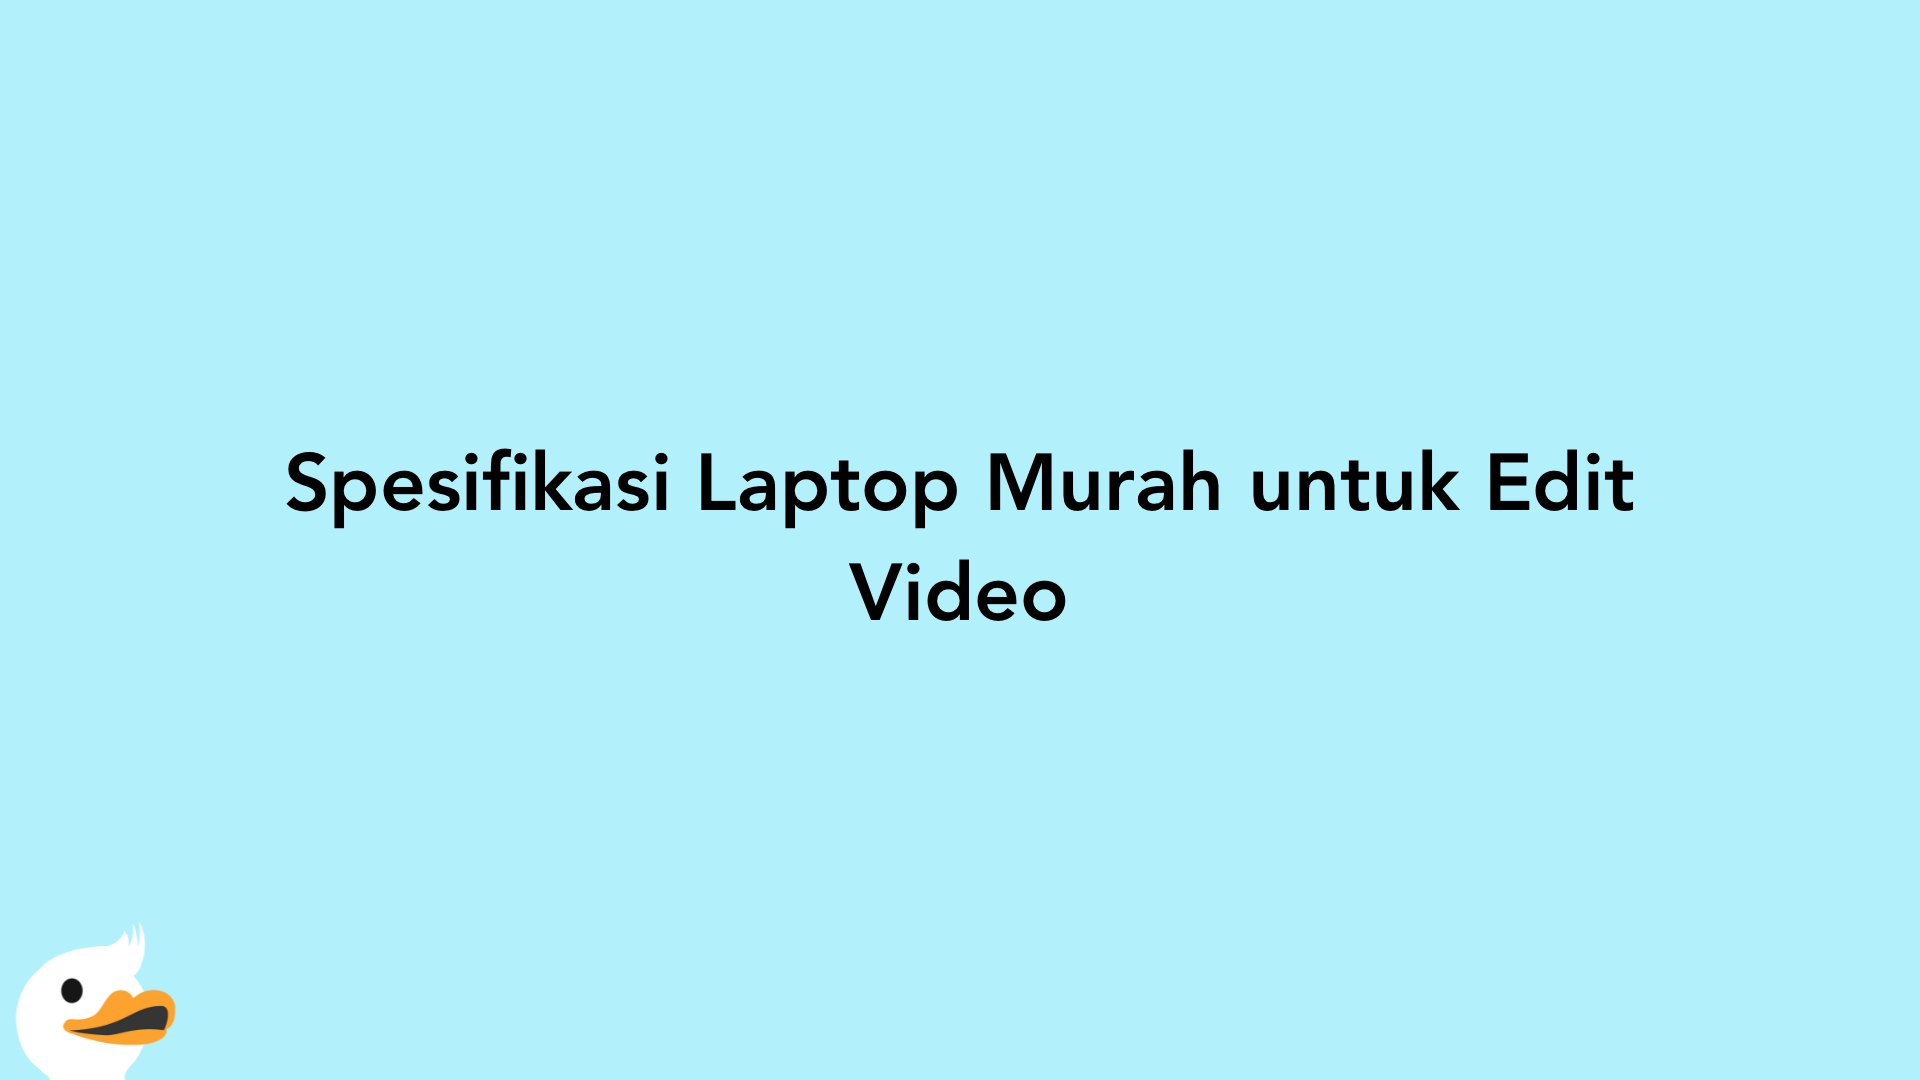 Spesifikasi Laptop Murah untuk Edit Video